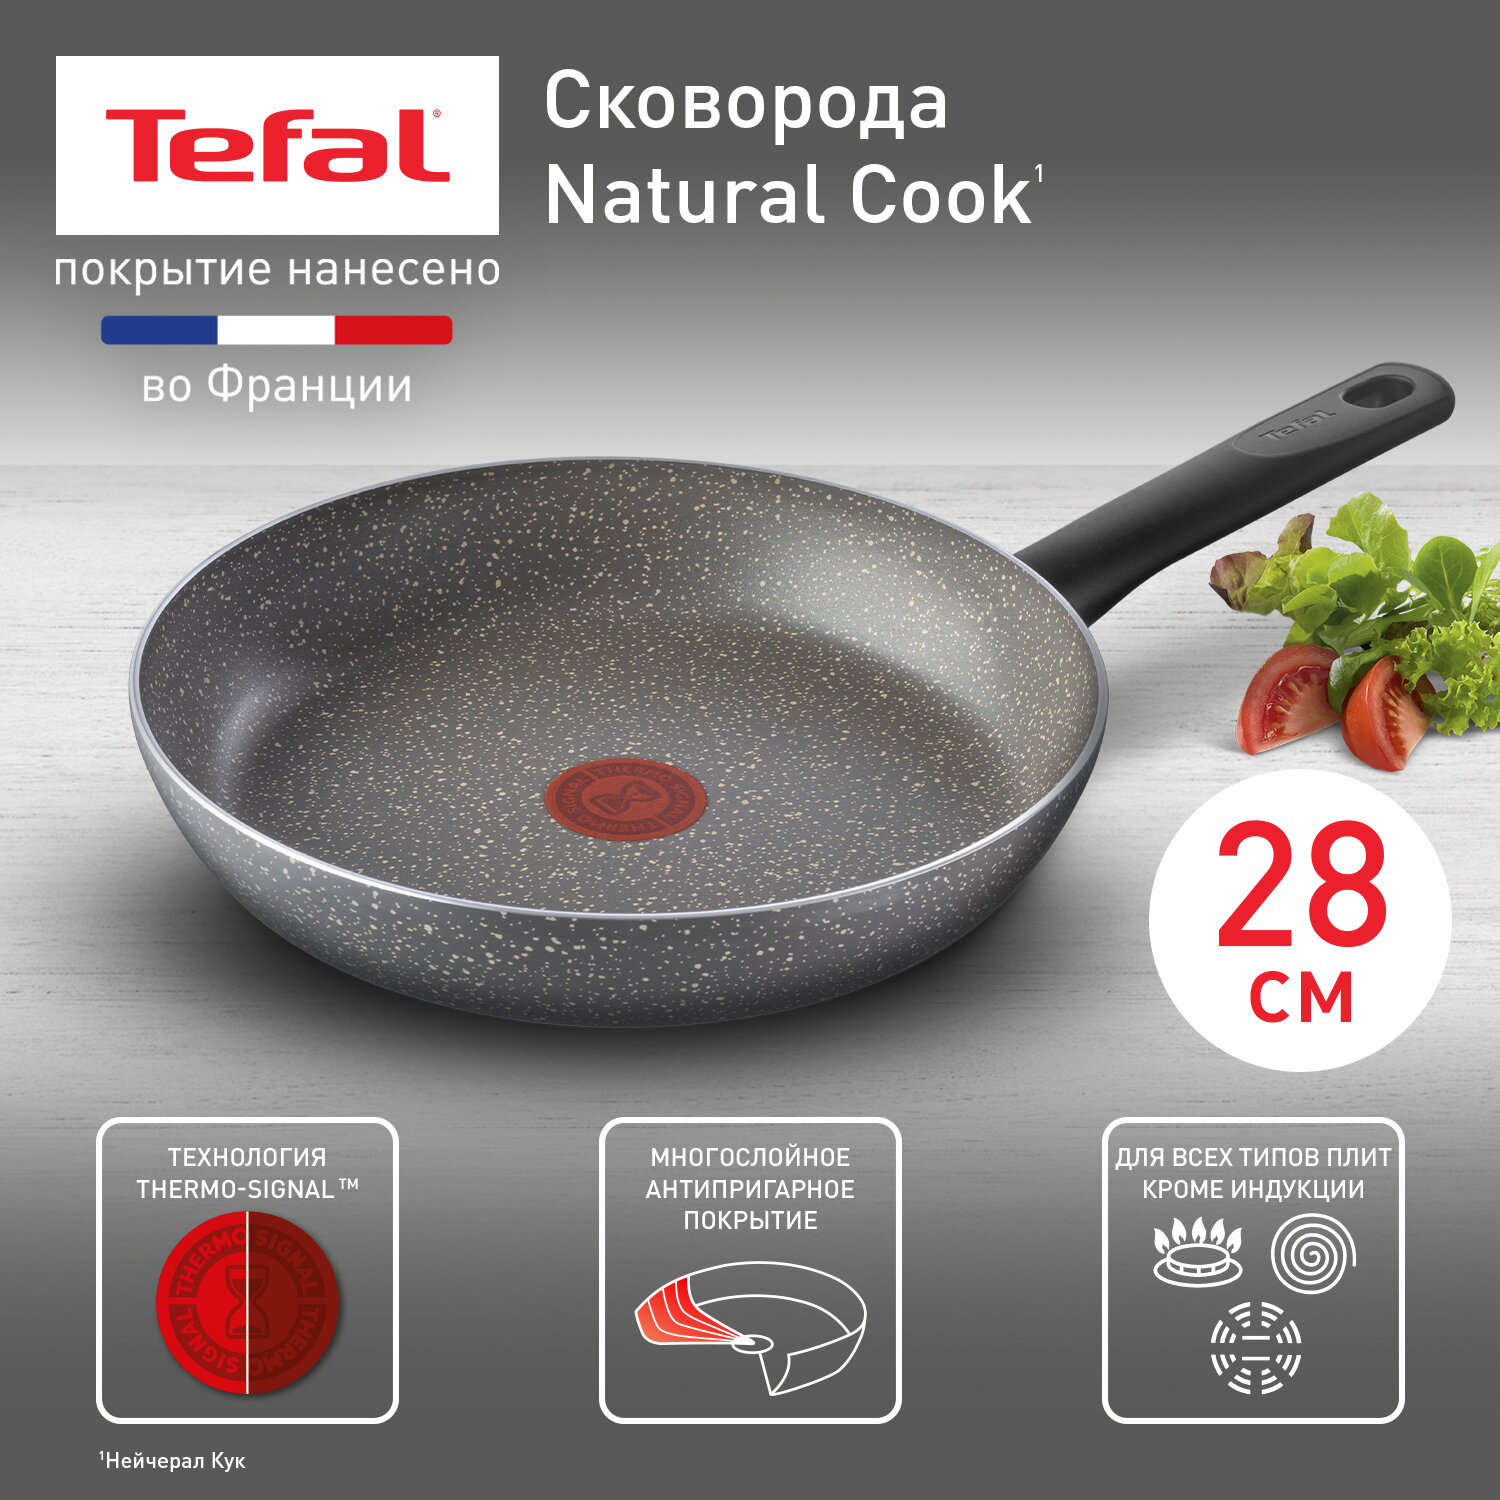 Сковорода Tefal Natural Cook 04213128 диаметр 28 см с индикатором температуры и антипригарным покрытием для газовых электрических плит